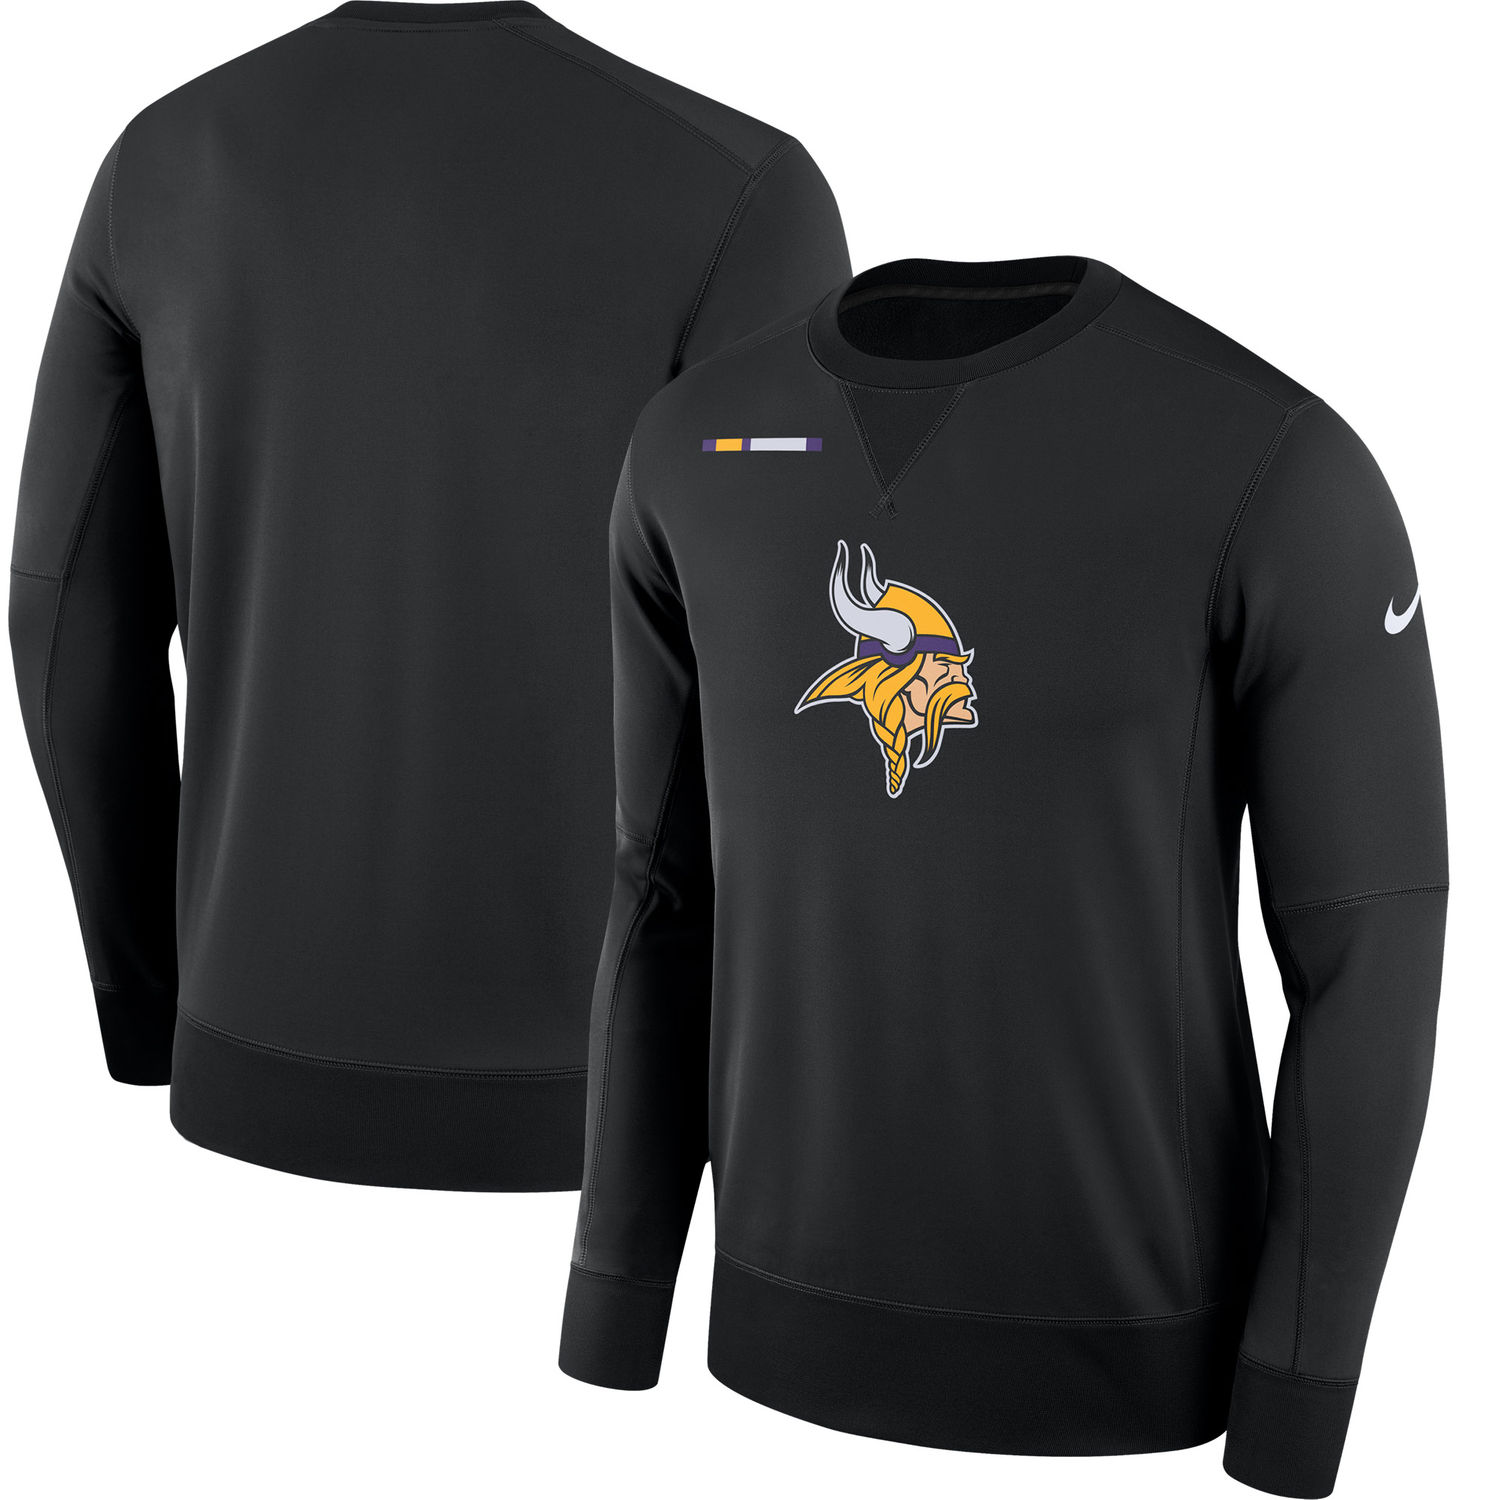 Mens Minnesota Vikings Nike Black Sideline Team Logo Performance Sweatshirt